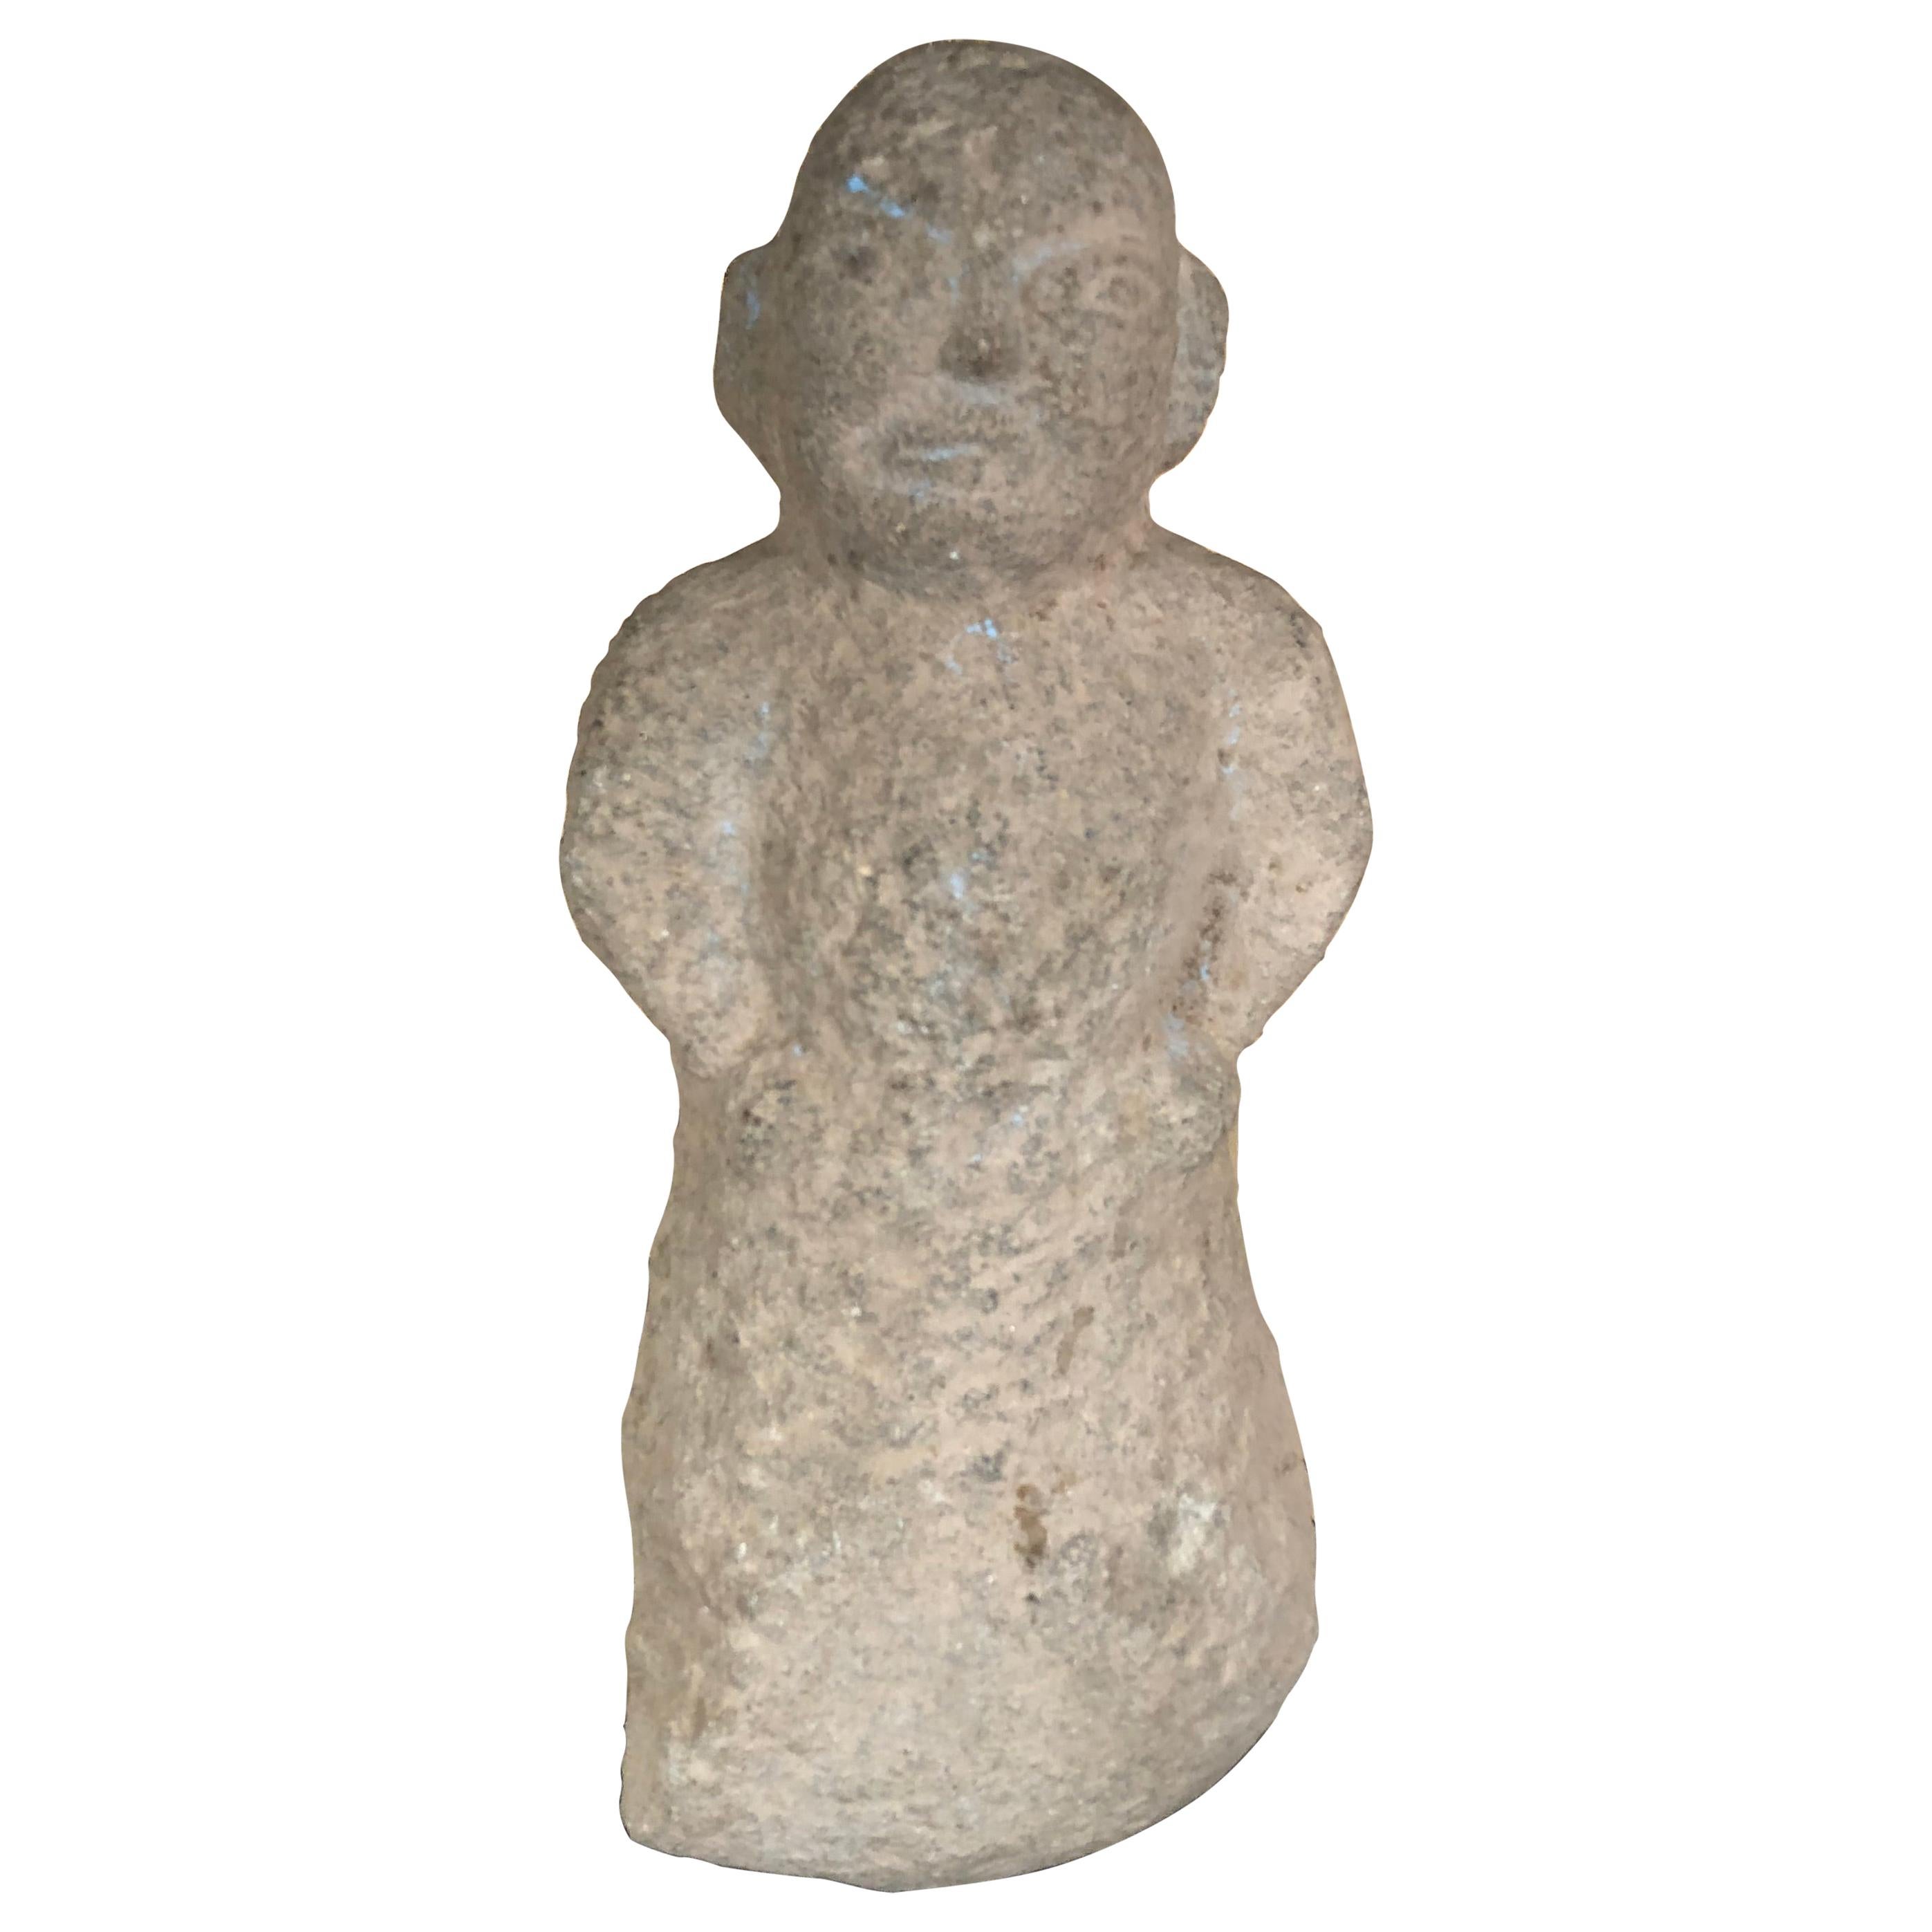 Chinesische männliche Figur aus Stein, 206 v. Chr. - 220 n. Chr.